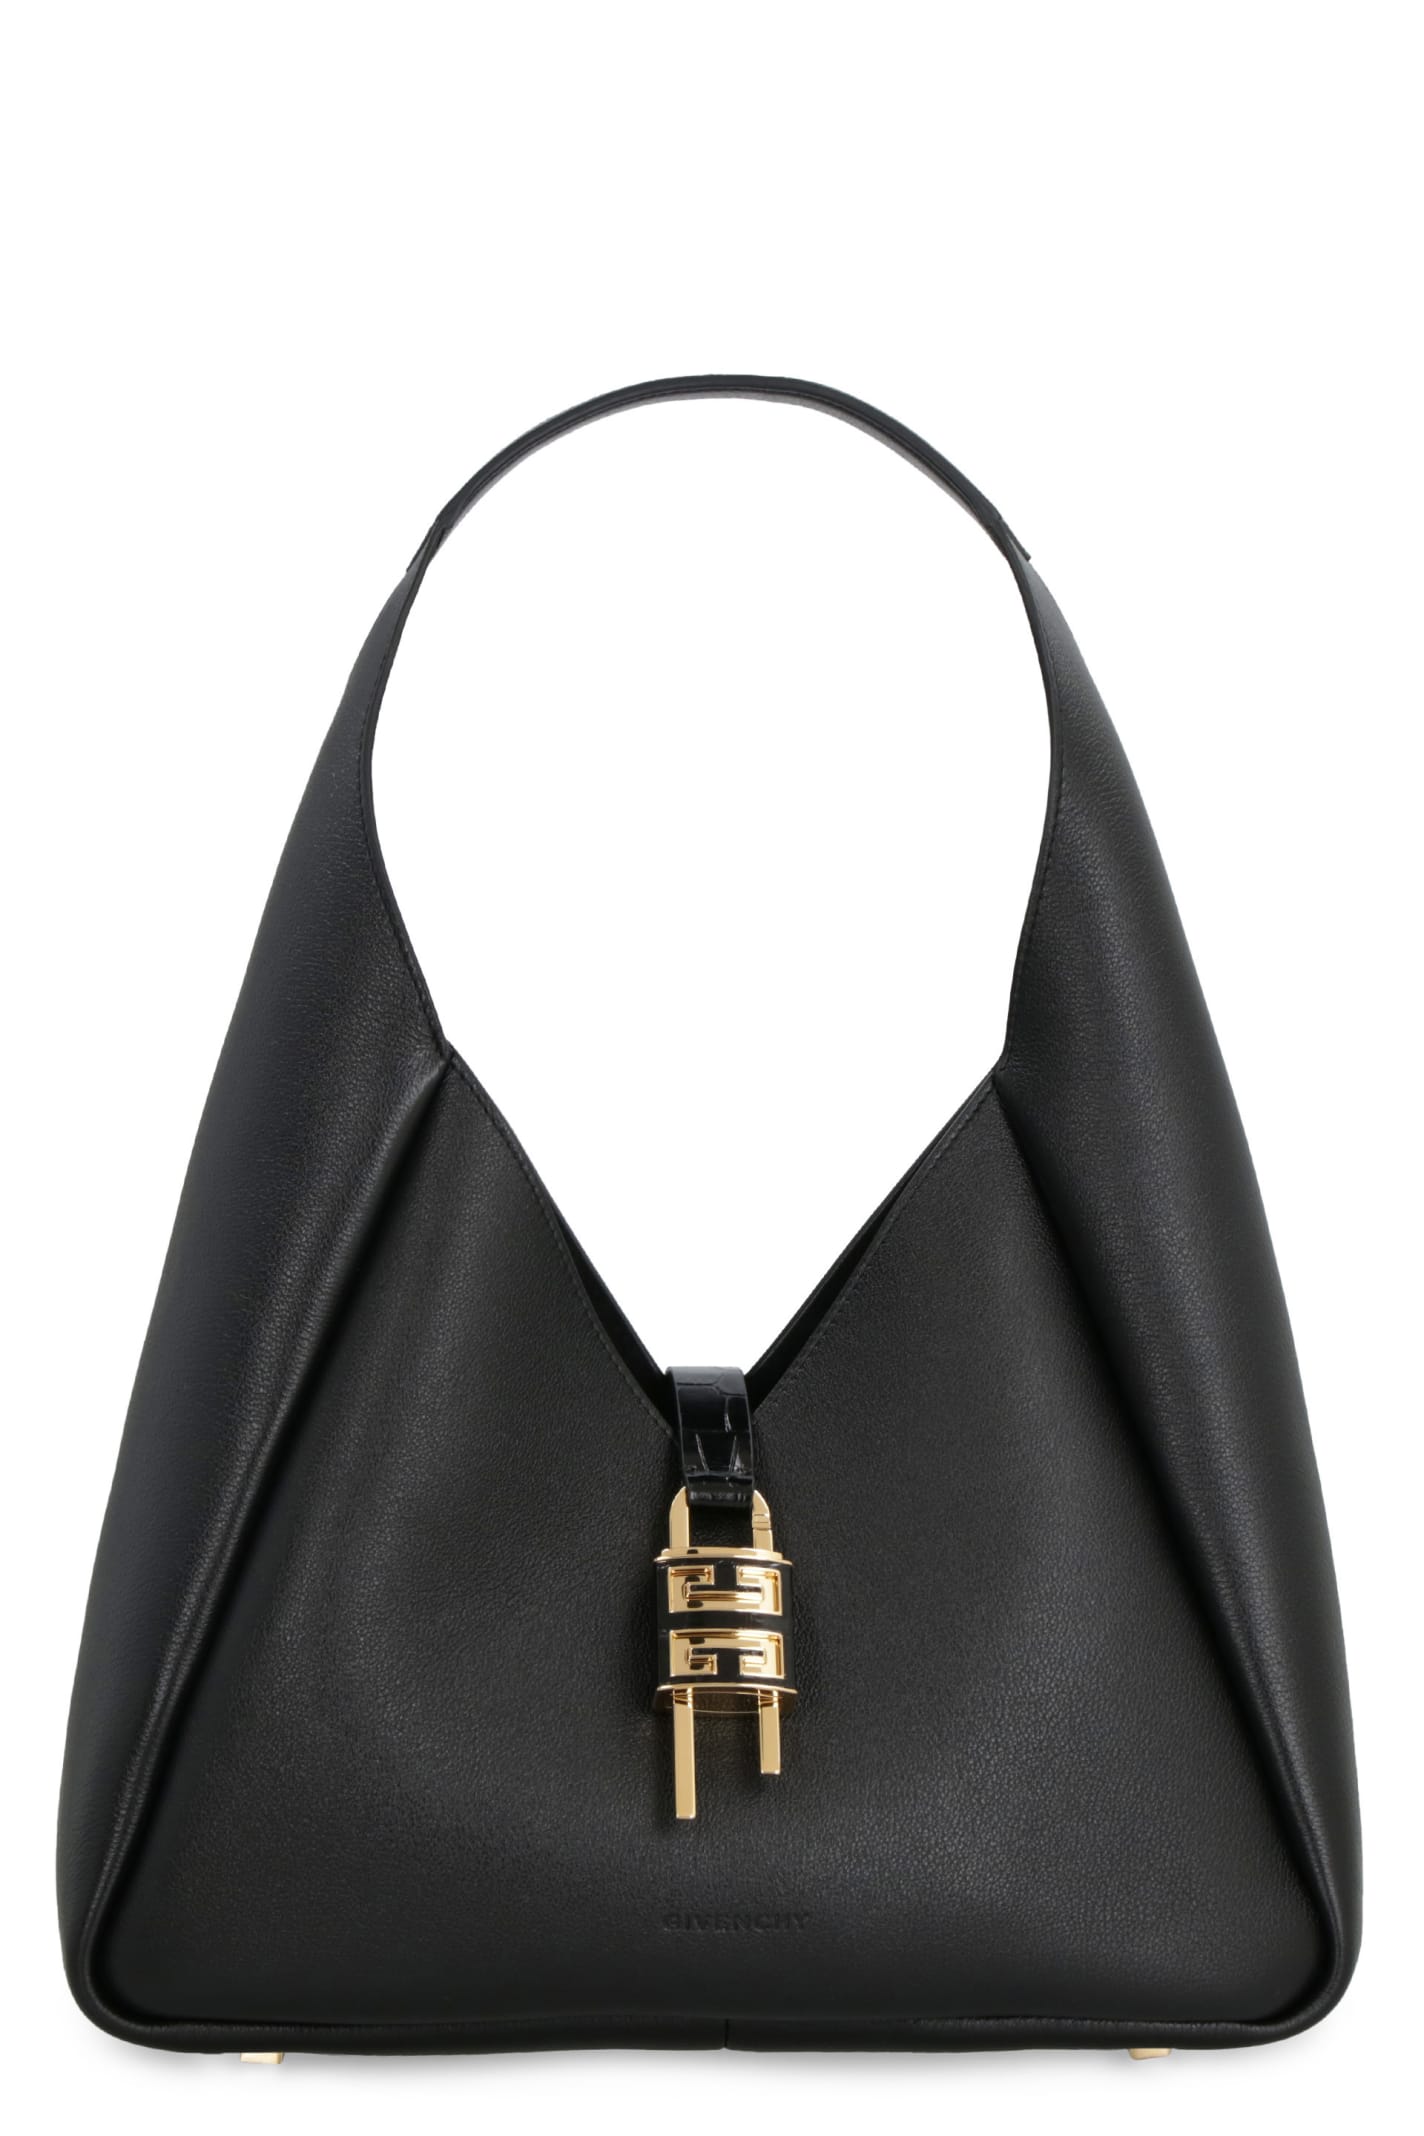 Givenchy G-hobo Leather Bag